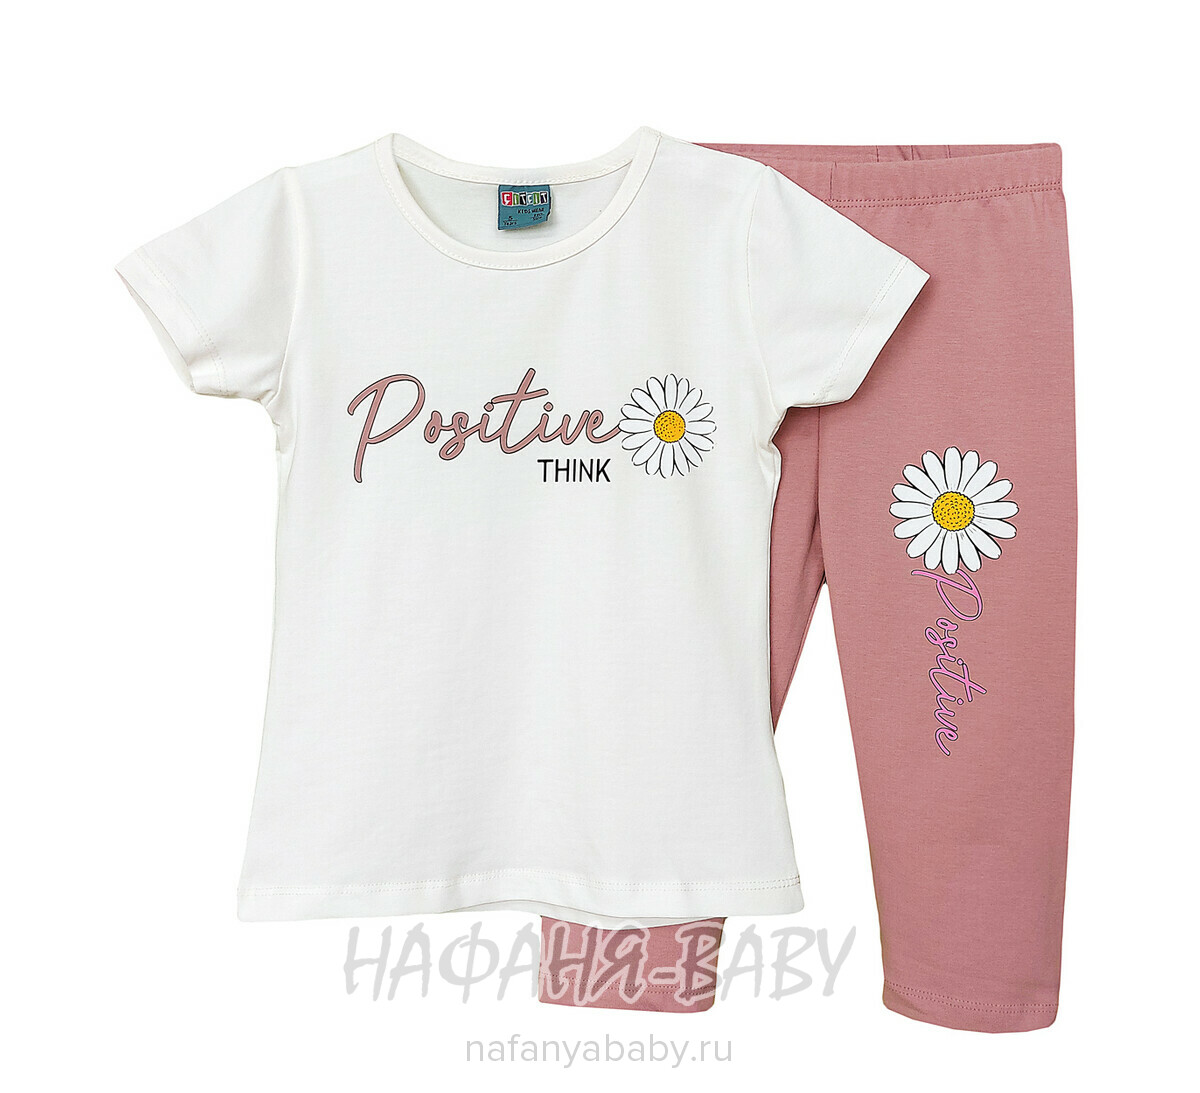 Детский костюм (футболка + лосины) Cit Cit арт: 16377, 2-5 лет, цвет кремовый с чайной розой, оптом Турция